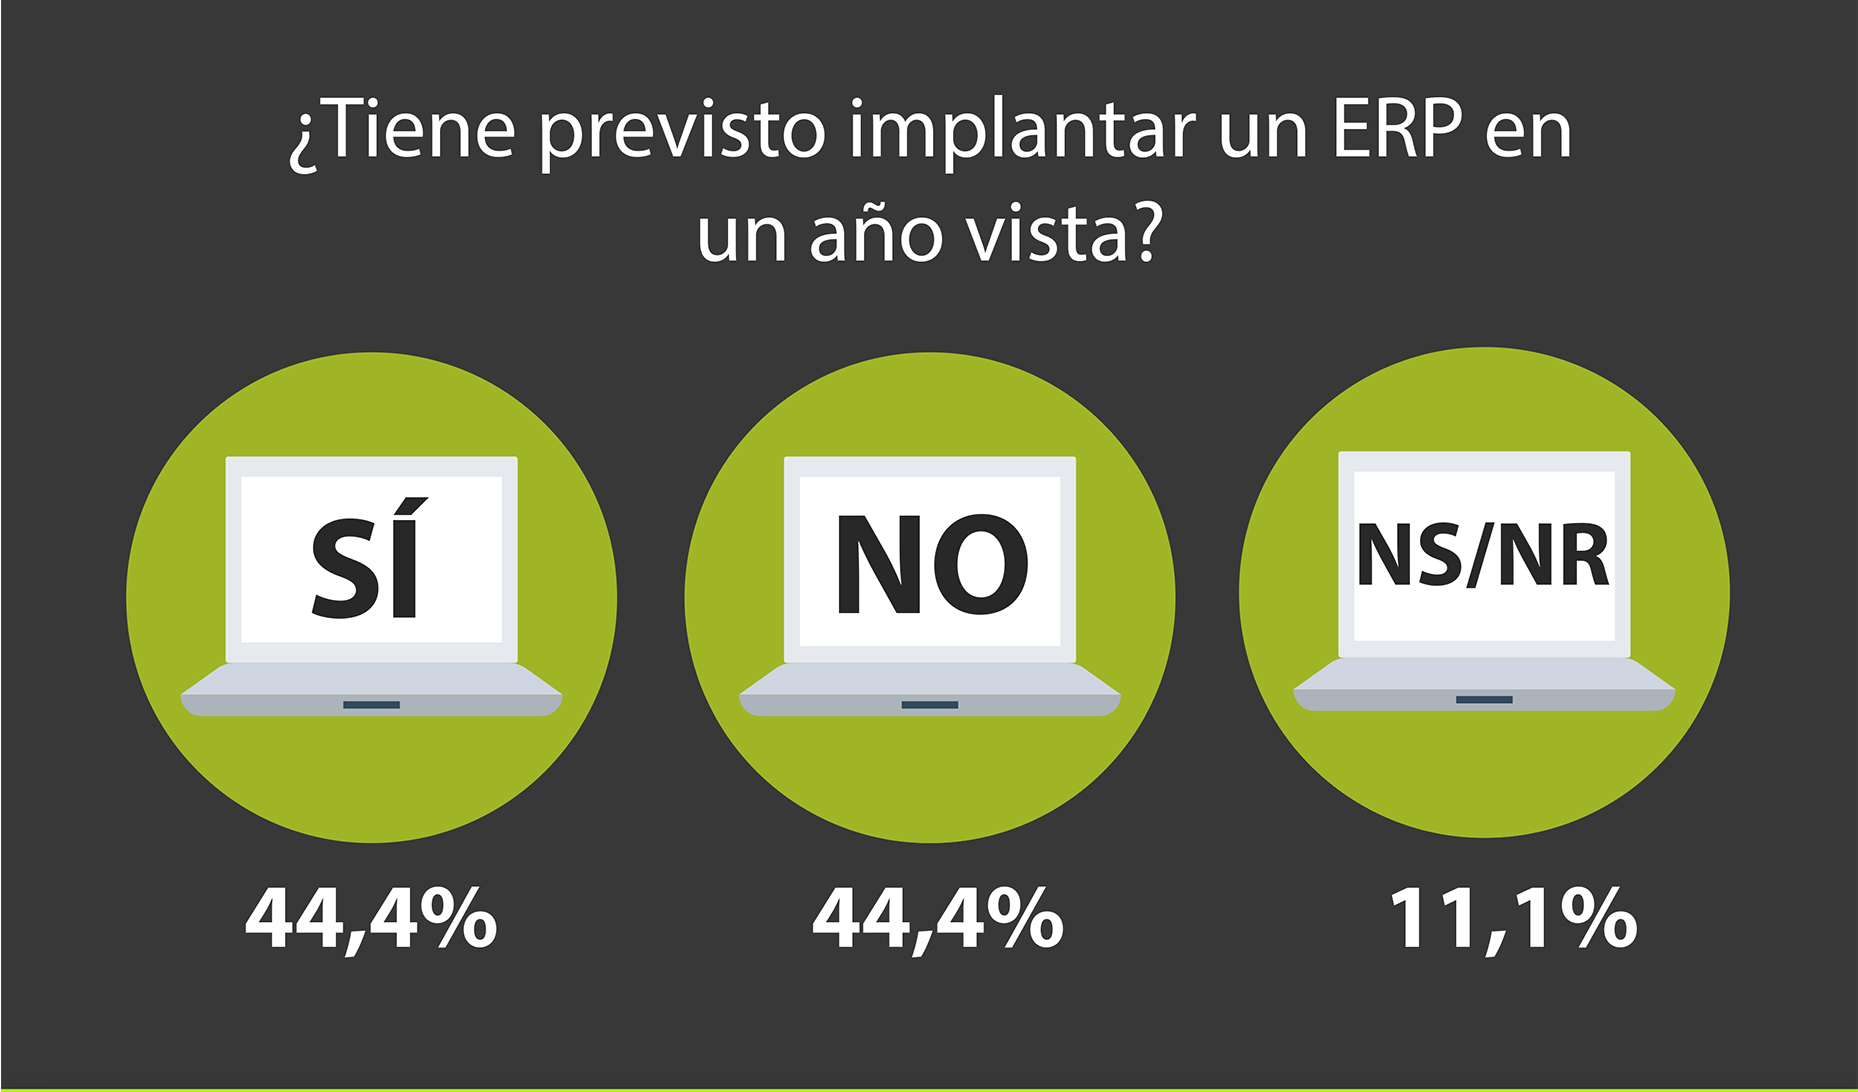 De los encuestados, el 44,4% asegura que tiene intencin de instalar un ERP en un ao vista, frente al otro 44,4% que no tiene intencin de hacerlo...